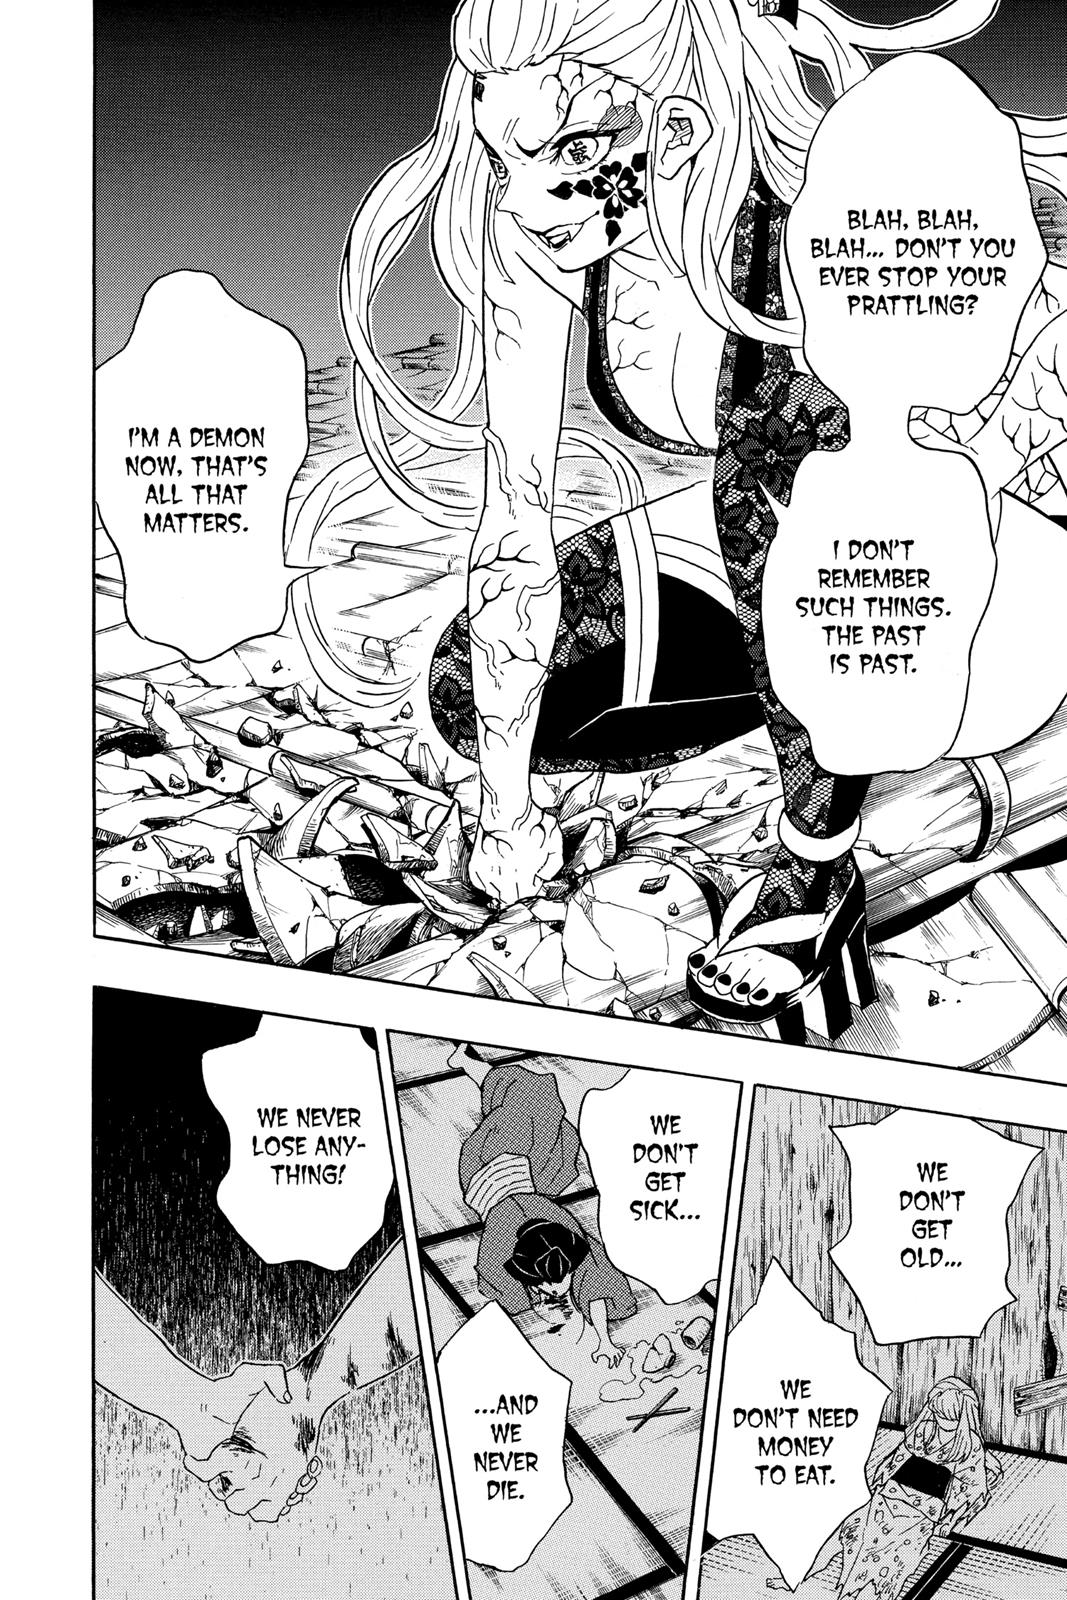 Demon Slayer Manga Manga Chapter - 81 - image 12